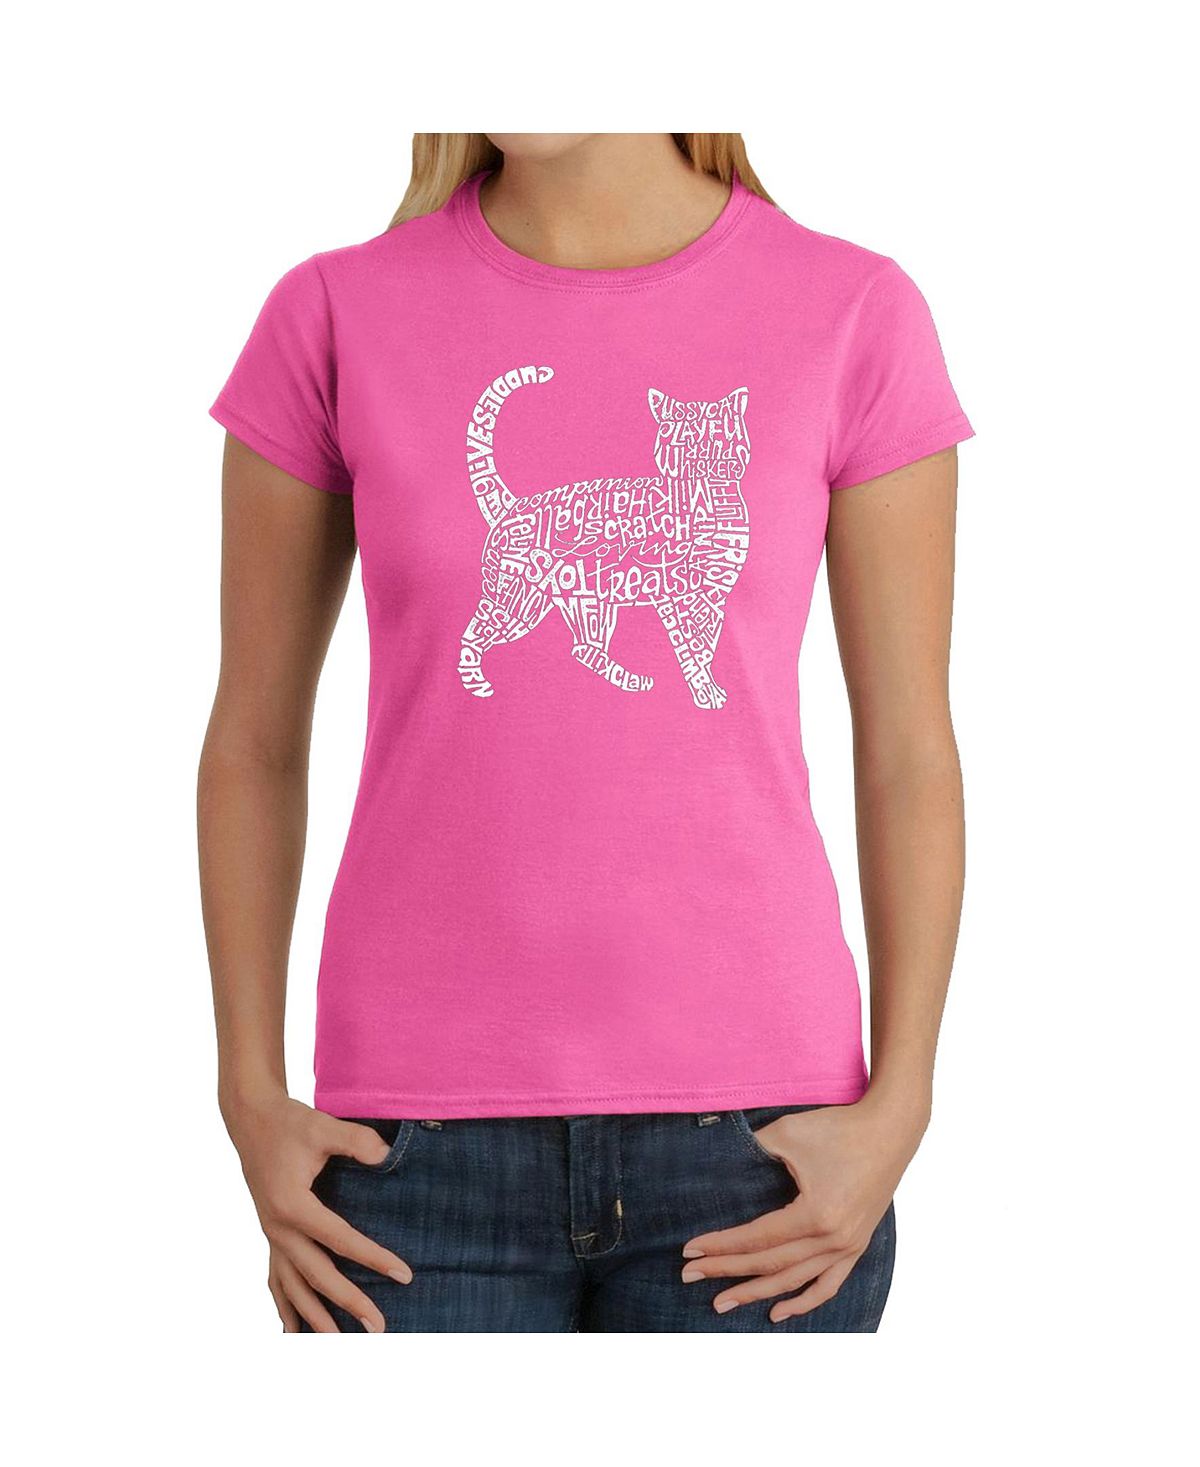 Женская футболка word art - кошка LA Pop Art, розовый женская футболка k pop word art la pop art розовый